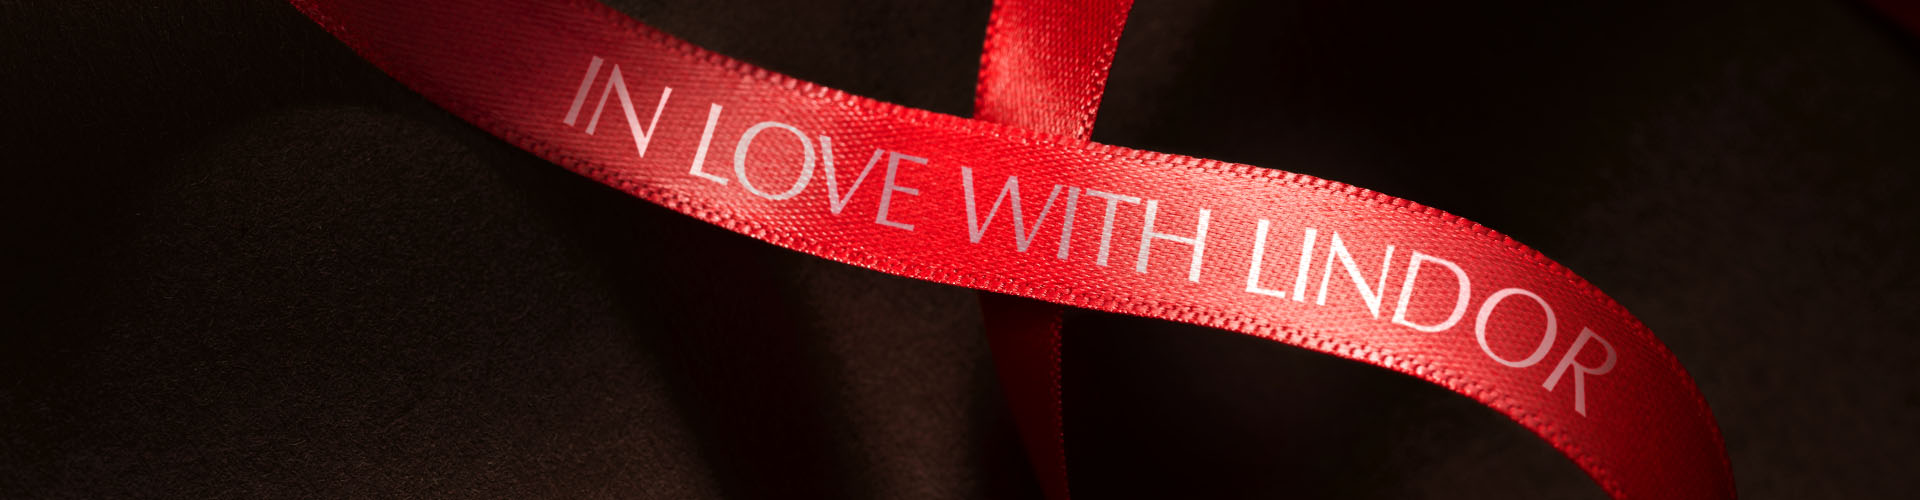 Eine rote Schleife mit der Aufschrift „In love with LINDOR“ auf einem braunen, seidenen Hintergrund (Foto)